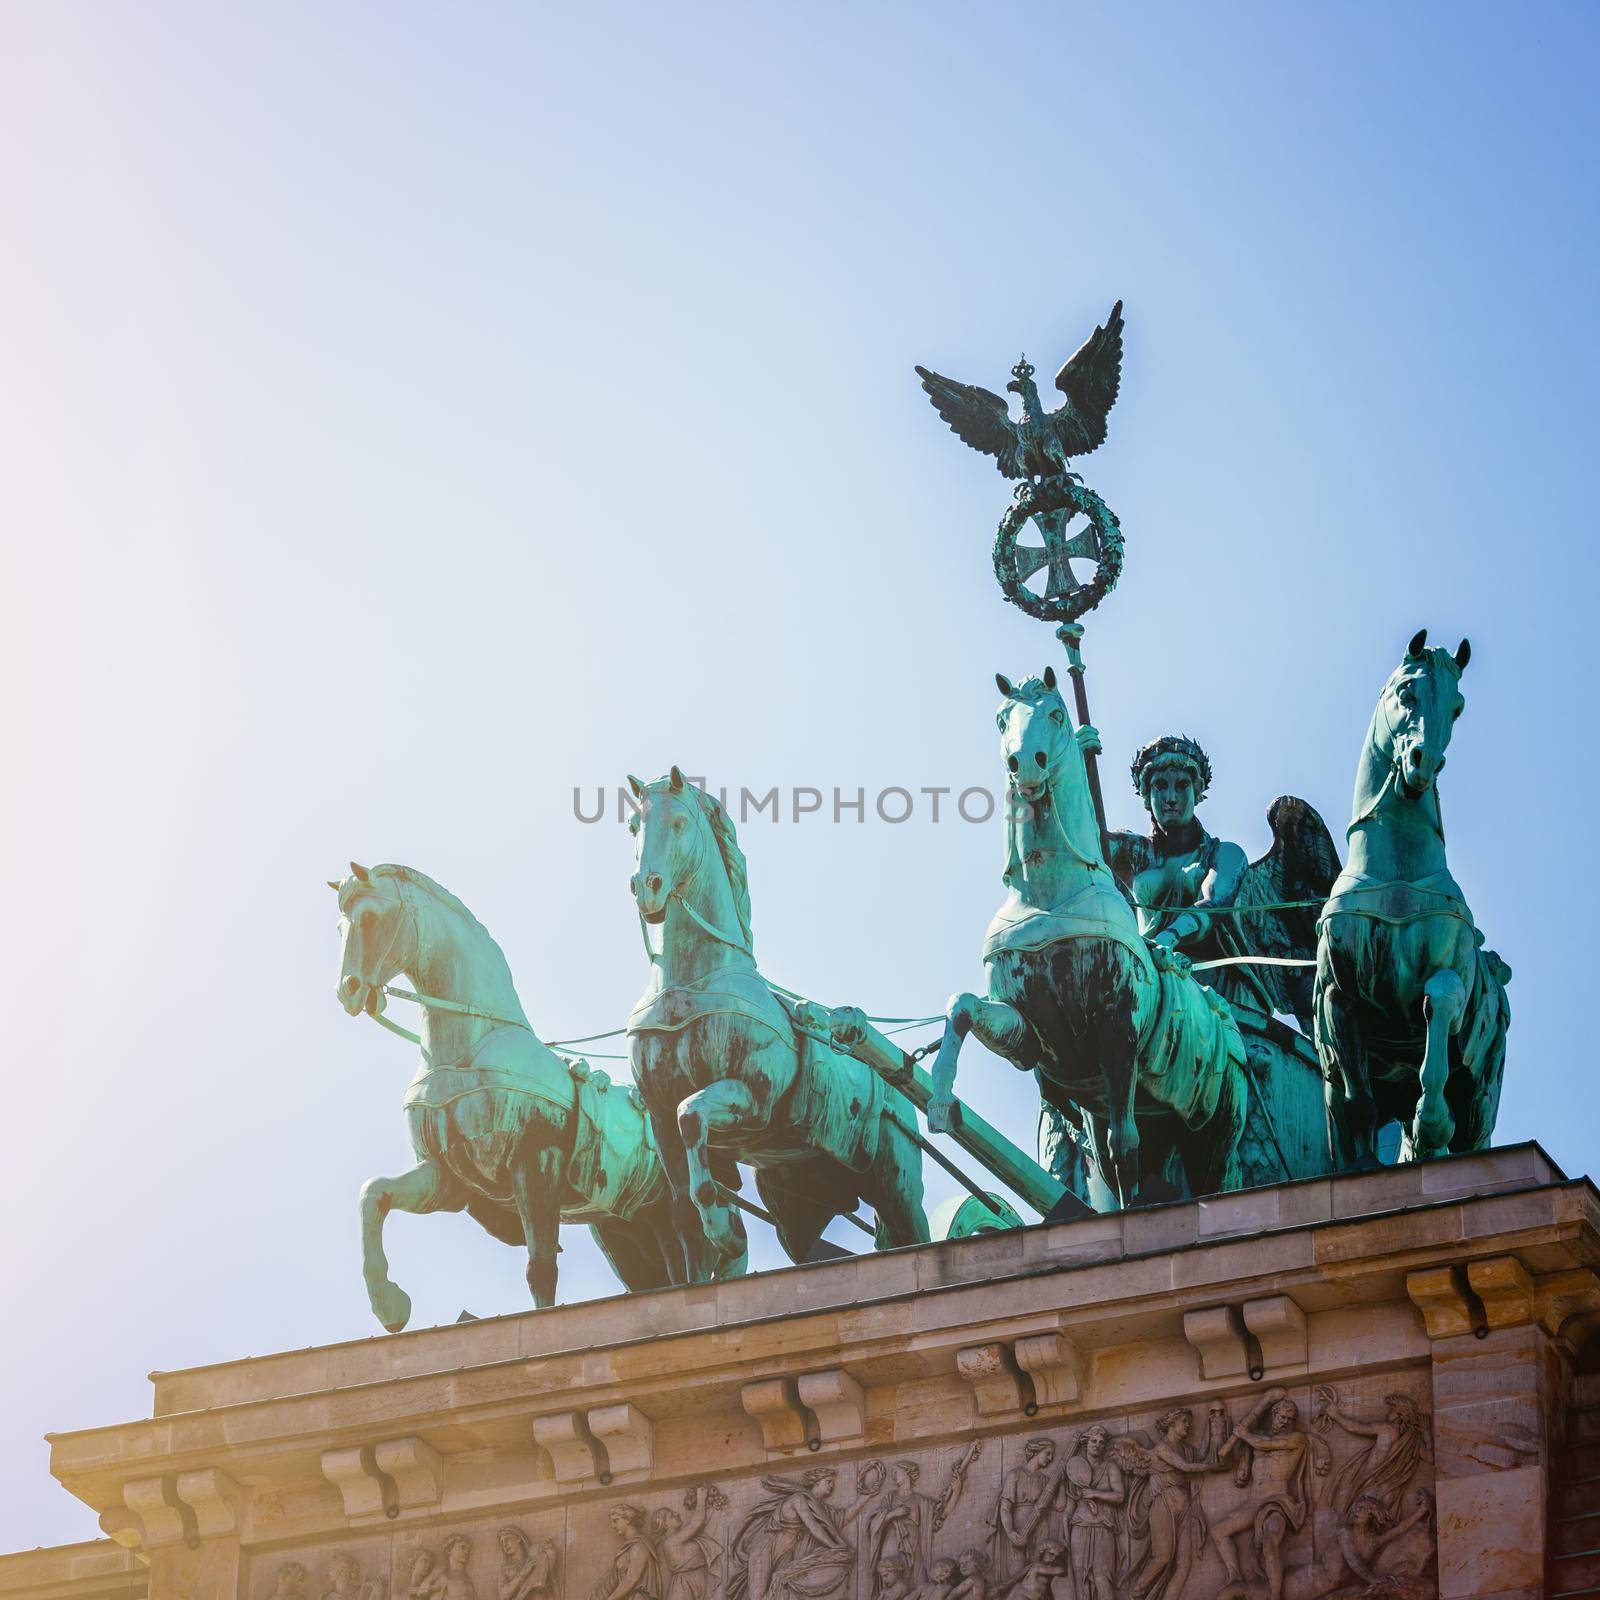 The Brandenburger Tor, Brandenburger Gate in Berlin, Germany. Tourist attraction. by Daxenbichler